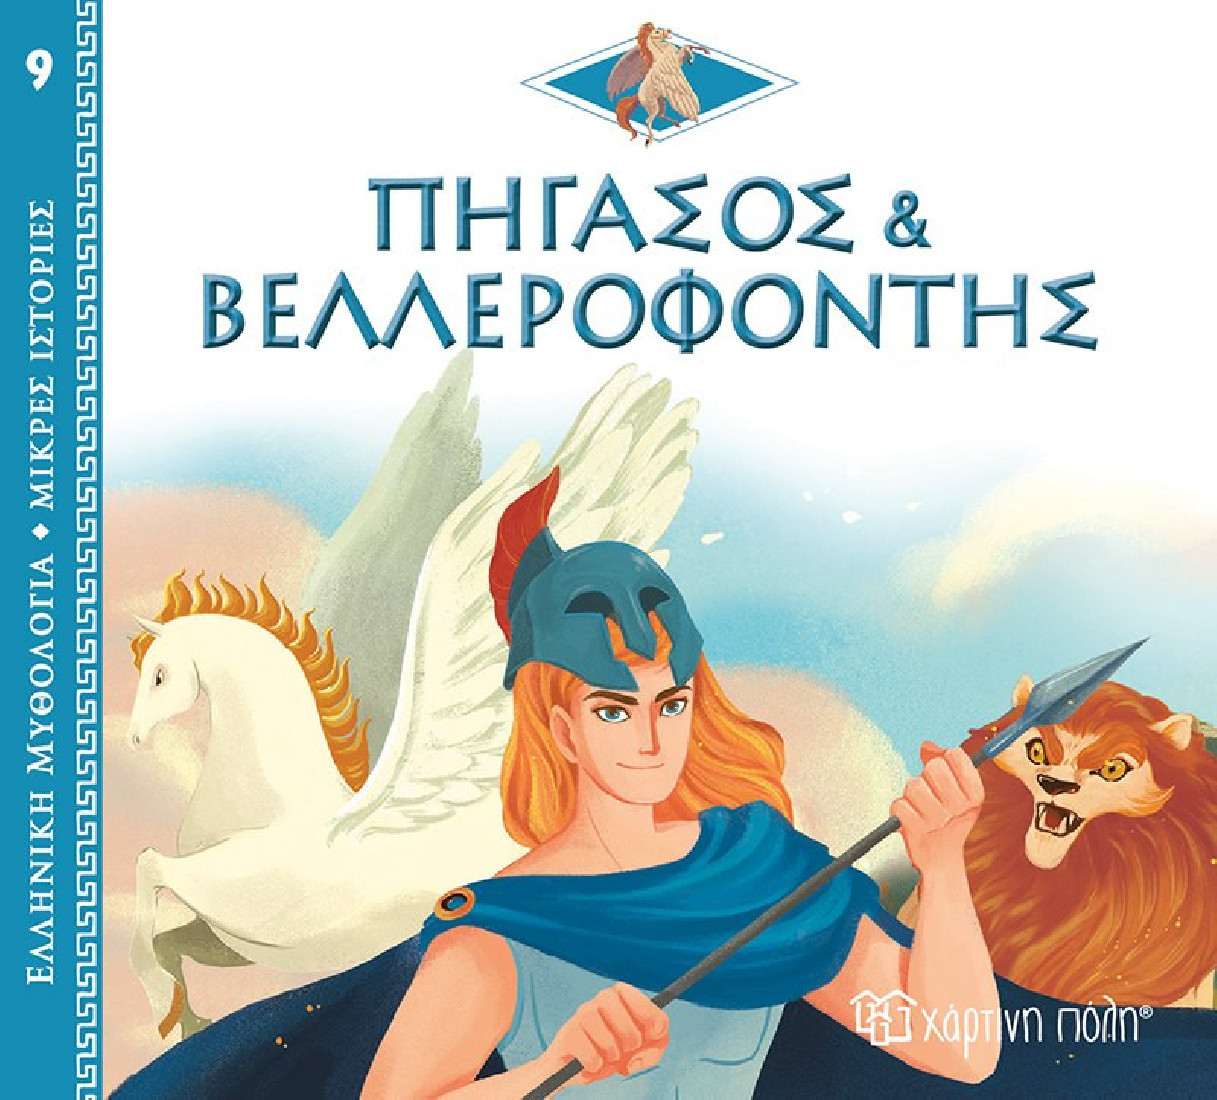 Ελληνική Μυθολογία- Μικρές ιστορίες: Πήγασος και Βαλλεροφόντης